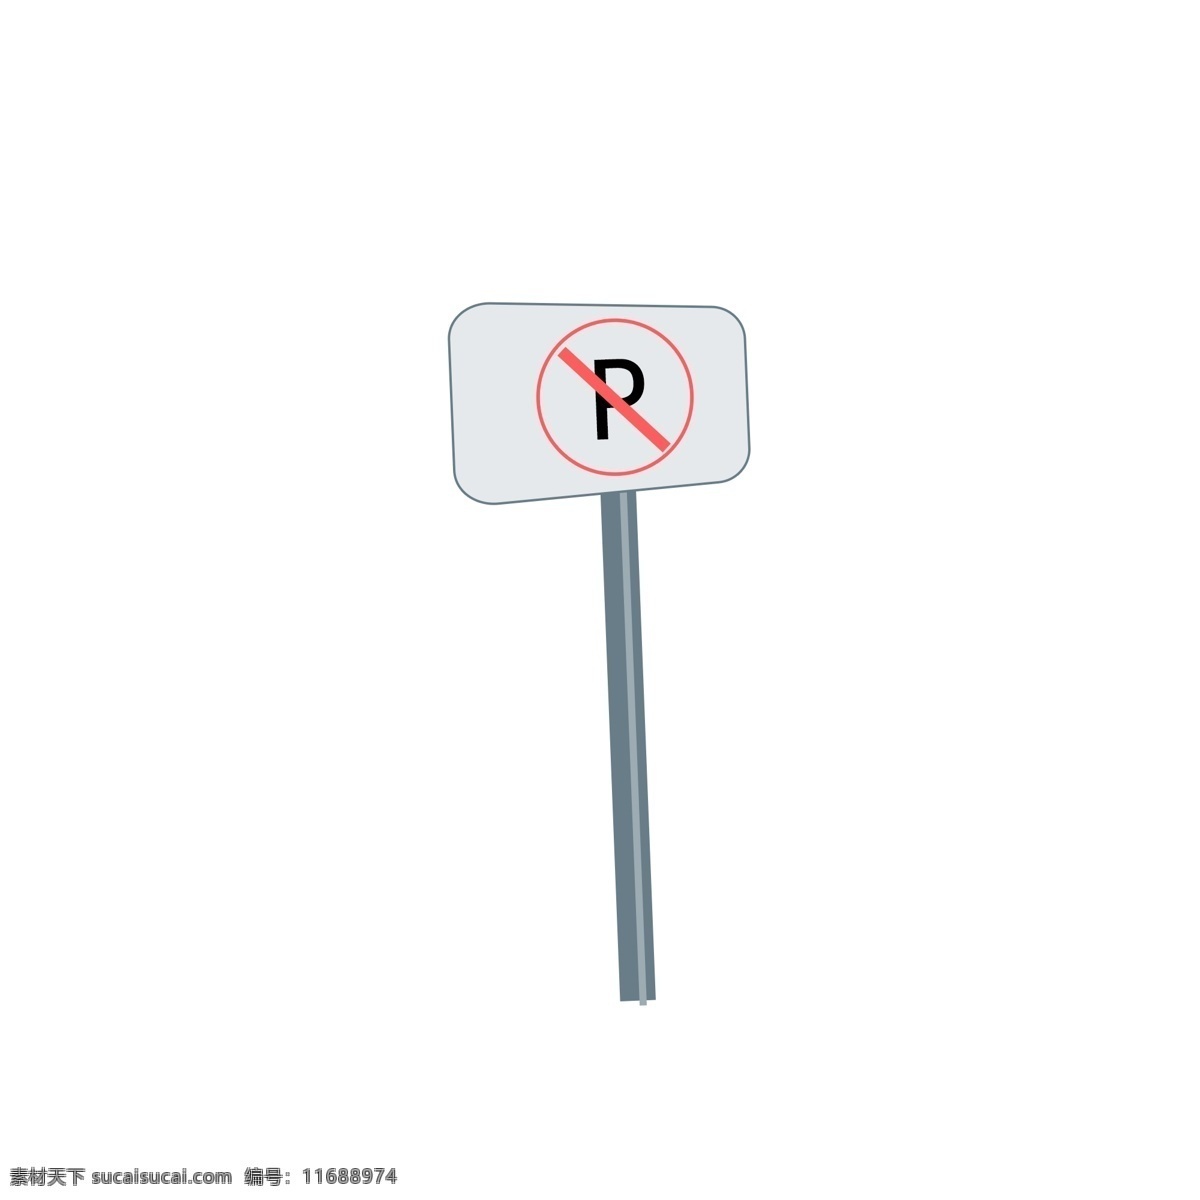 禁止 停车 交通 路牌 简约 卡通 插画 指示牌 禁止停车 psd元素